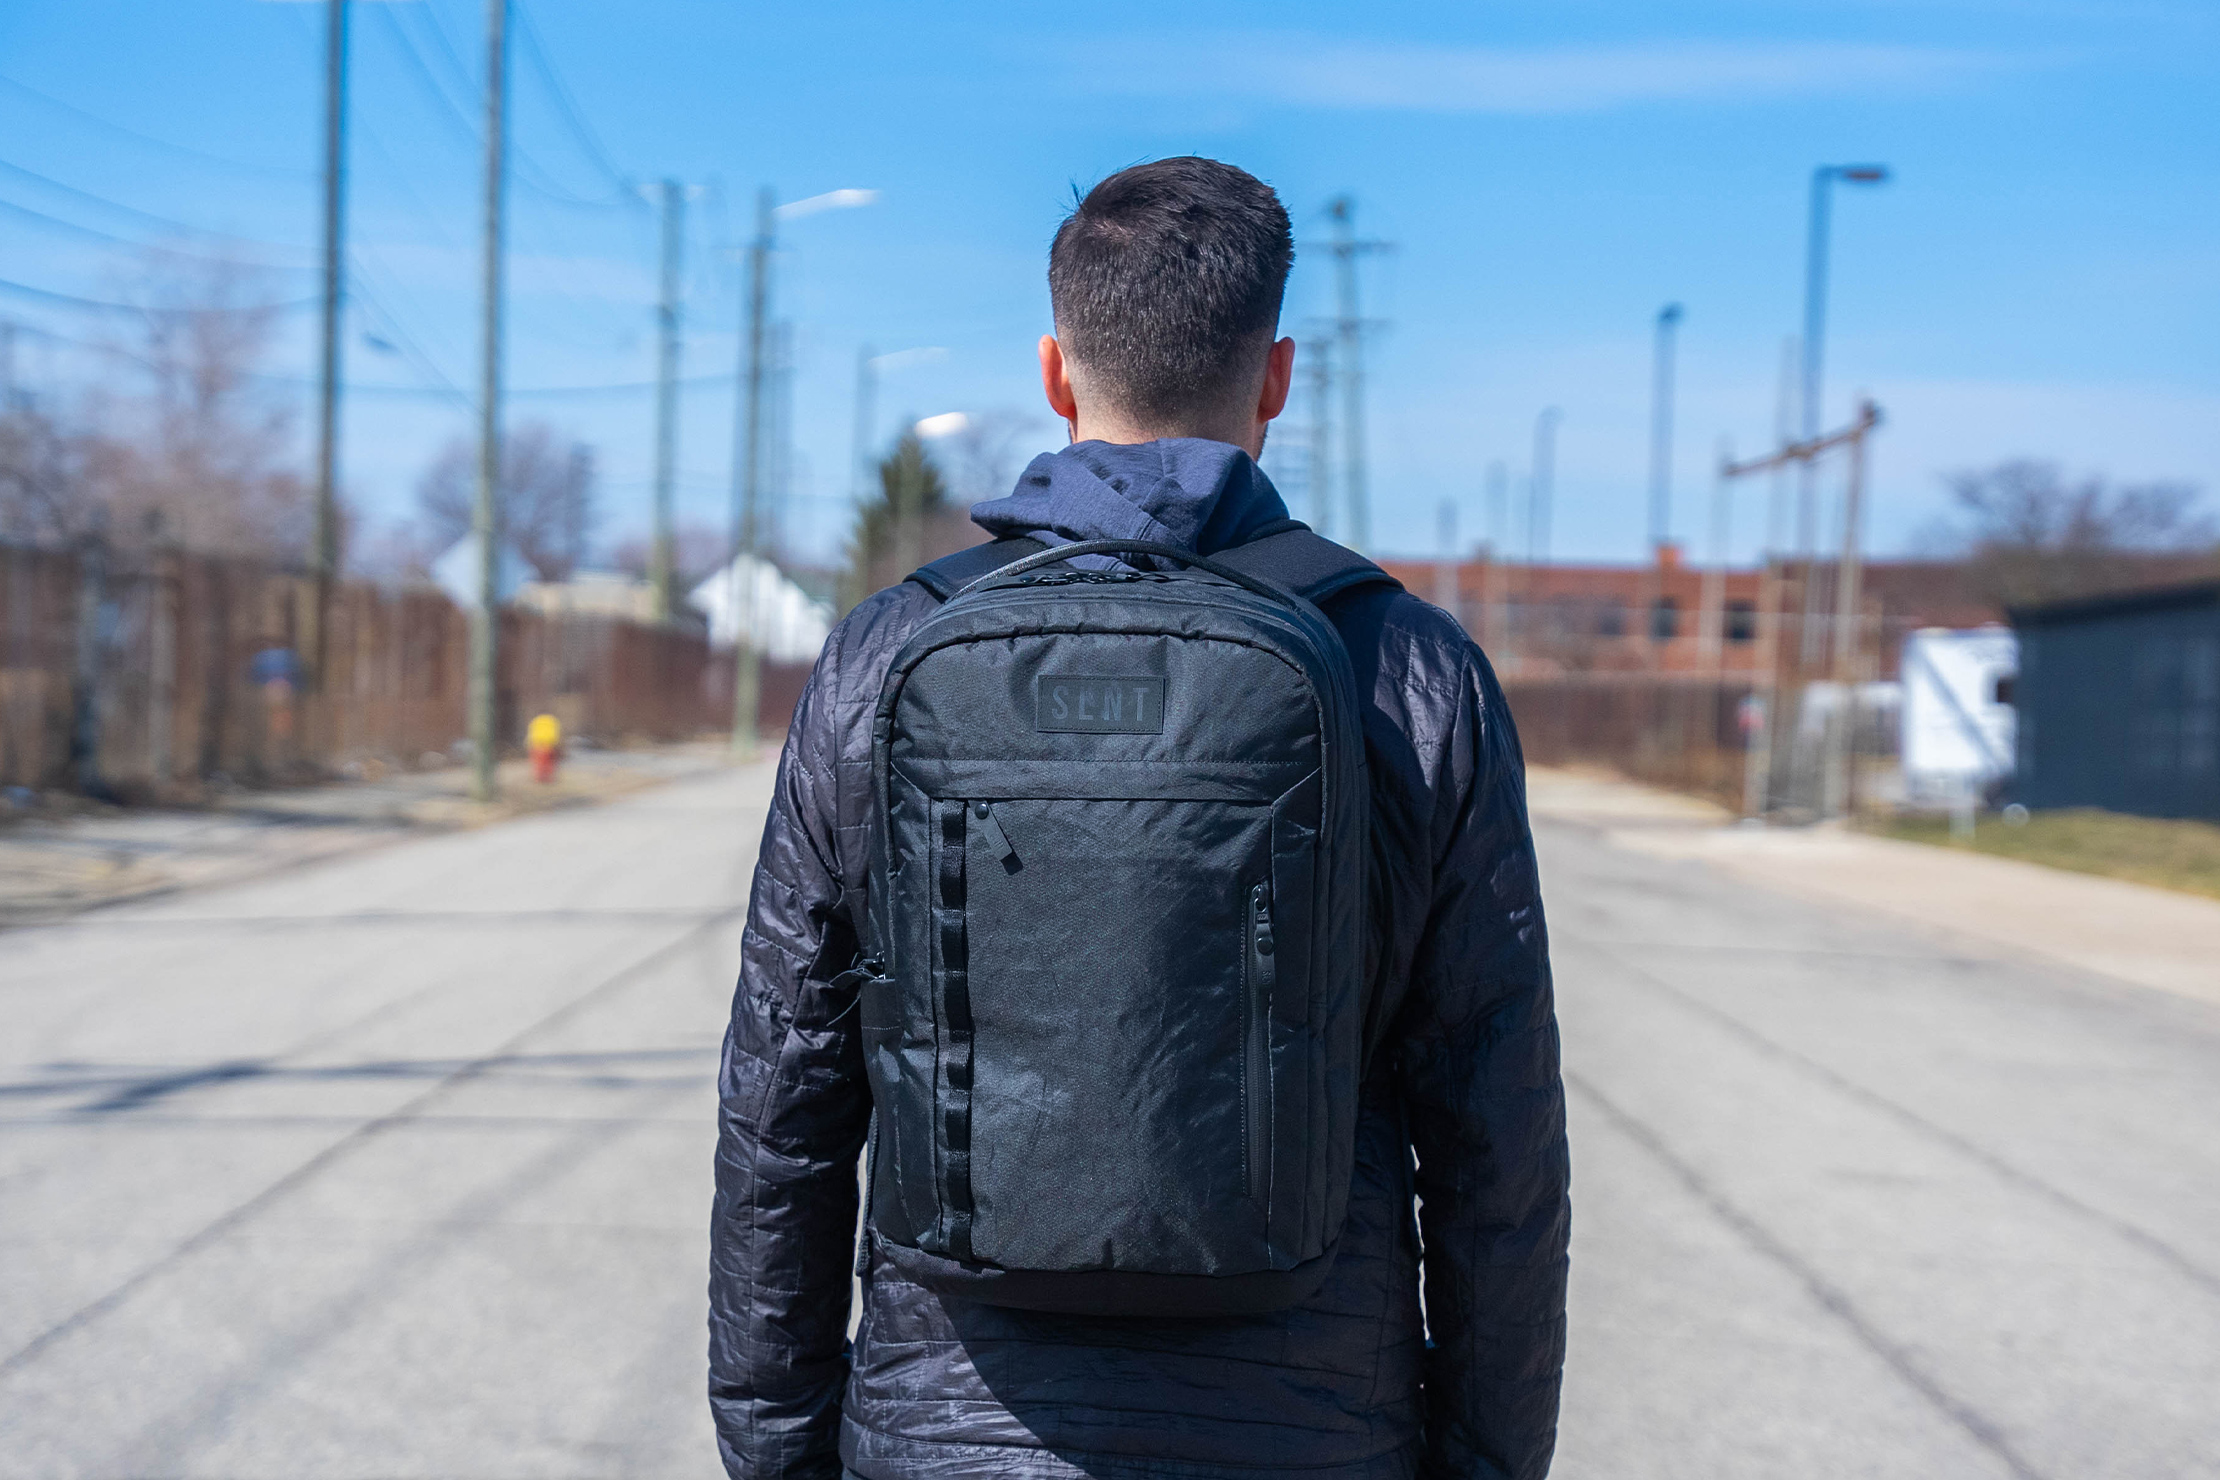 SLNT E3 Faraday Backpack Review | Pack Hacker